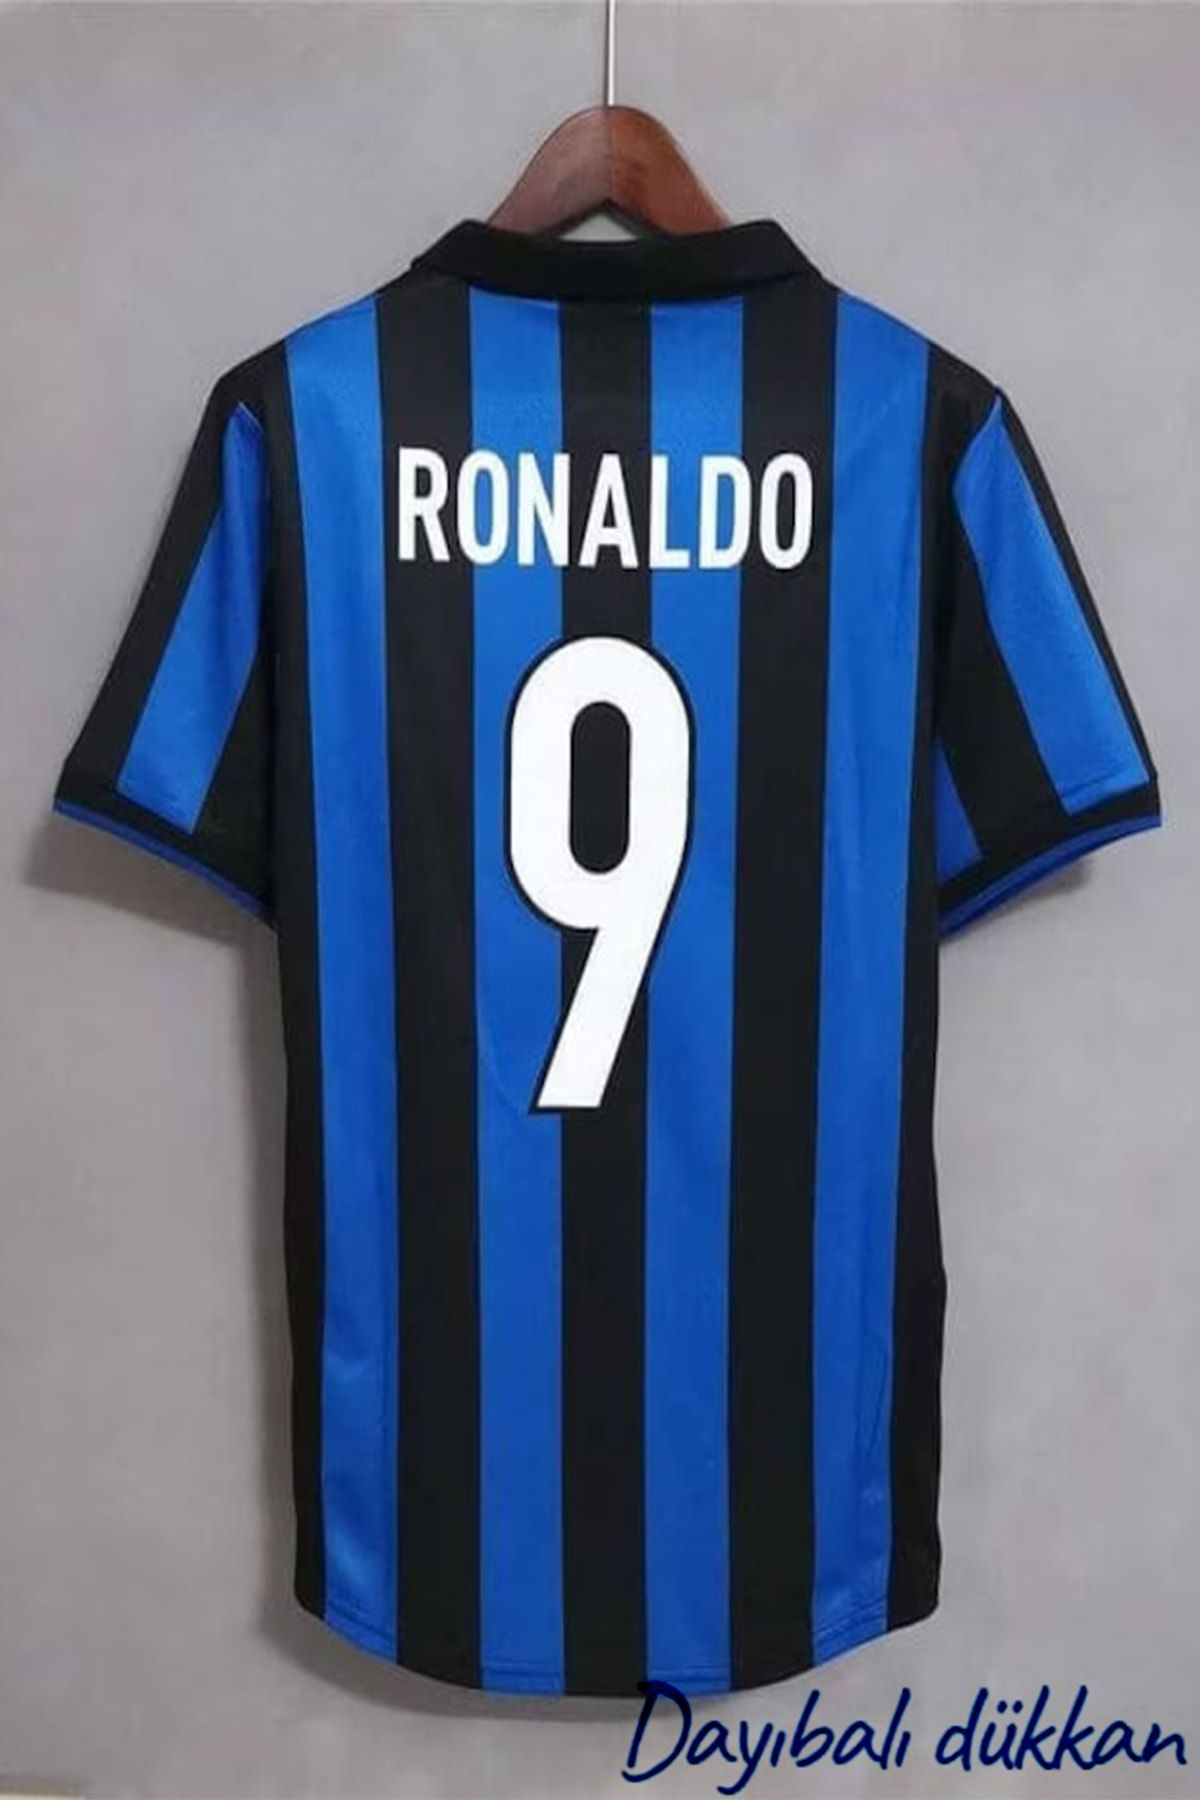 DAYIBALI DÜKKAN Dayıbalı Inter Efsane Ronaldo 98/99 Retro Forma